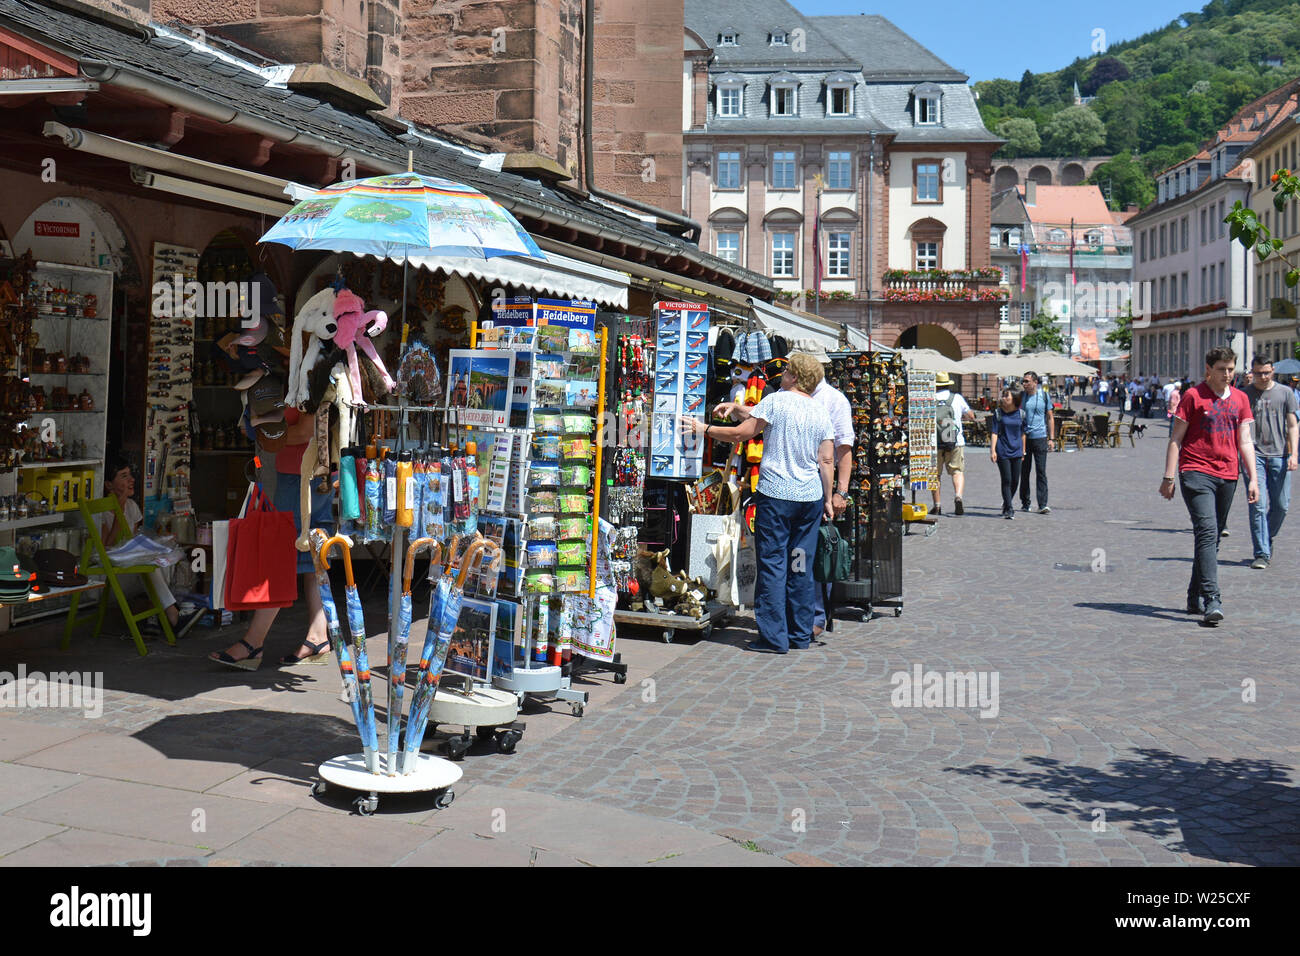 I turisti alla ricerca di negozi di souvenir che offre vari locali ninnoli al marketplace in una giornata di sole in Heidelberg, Germania Foto Stock